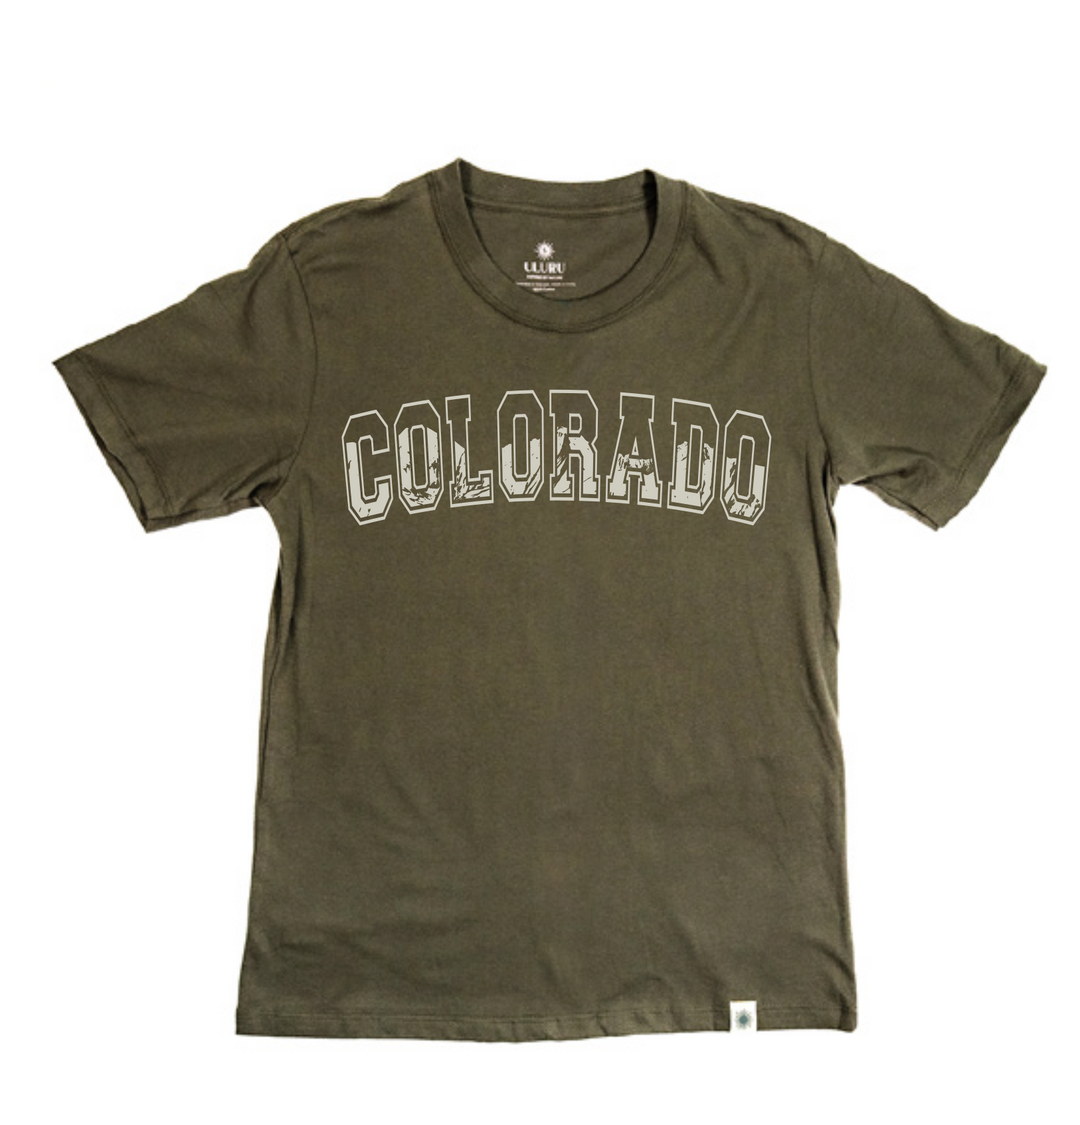 Collegiate Colorado Khoa Mountain Army Green Shirt - Unisex